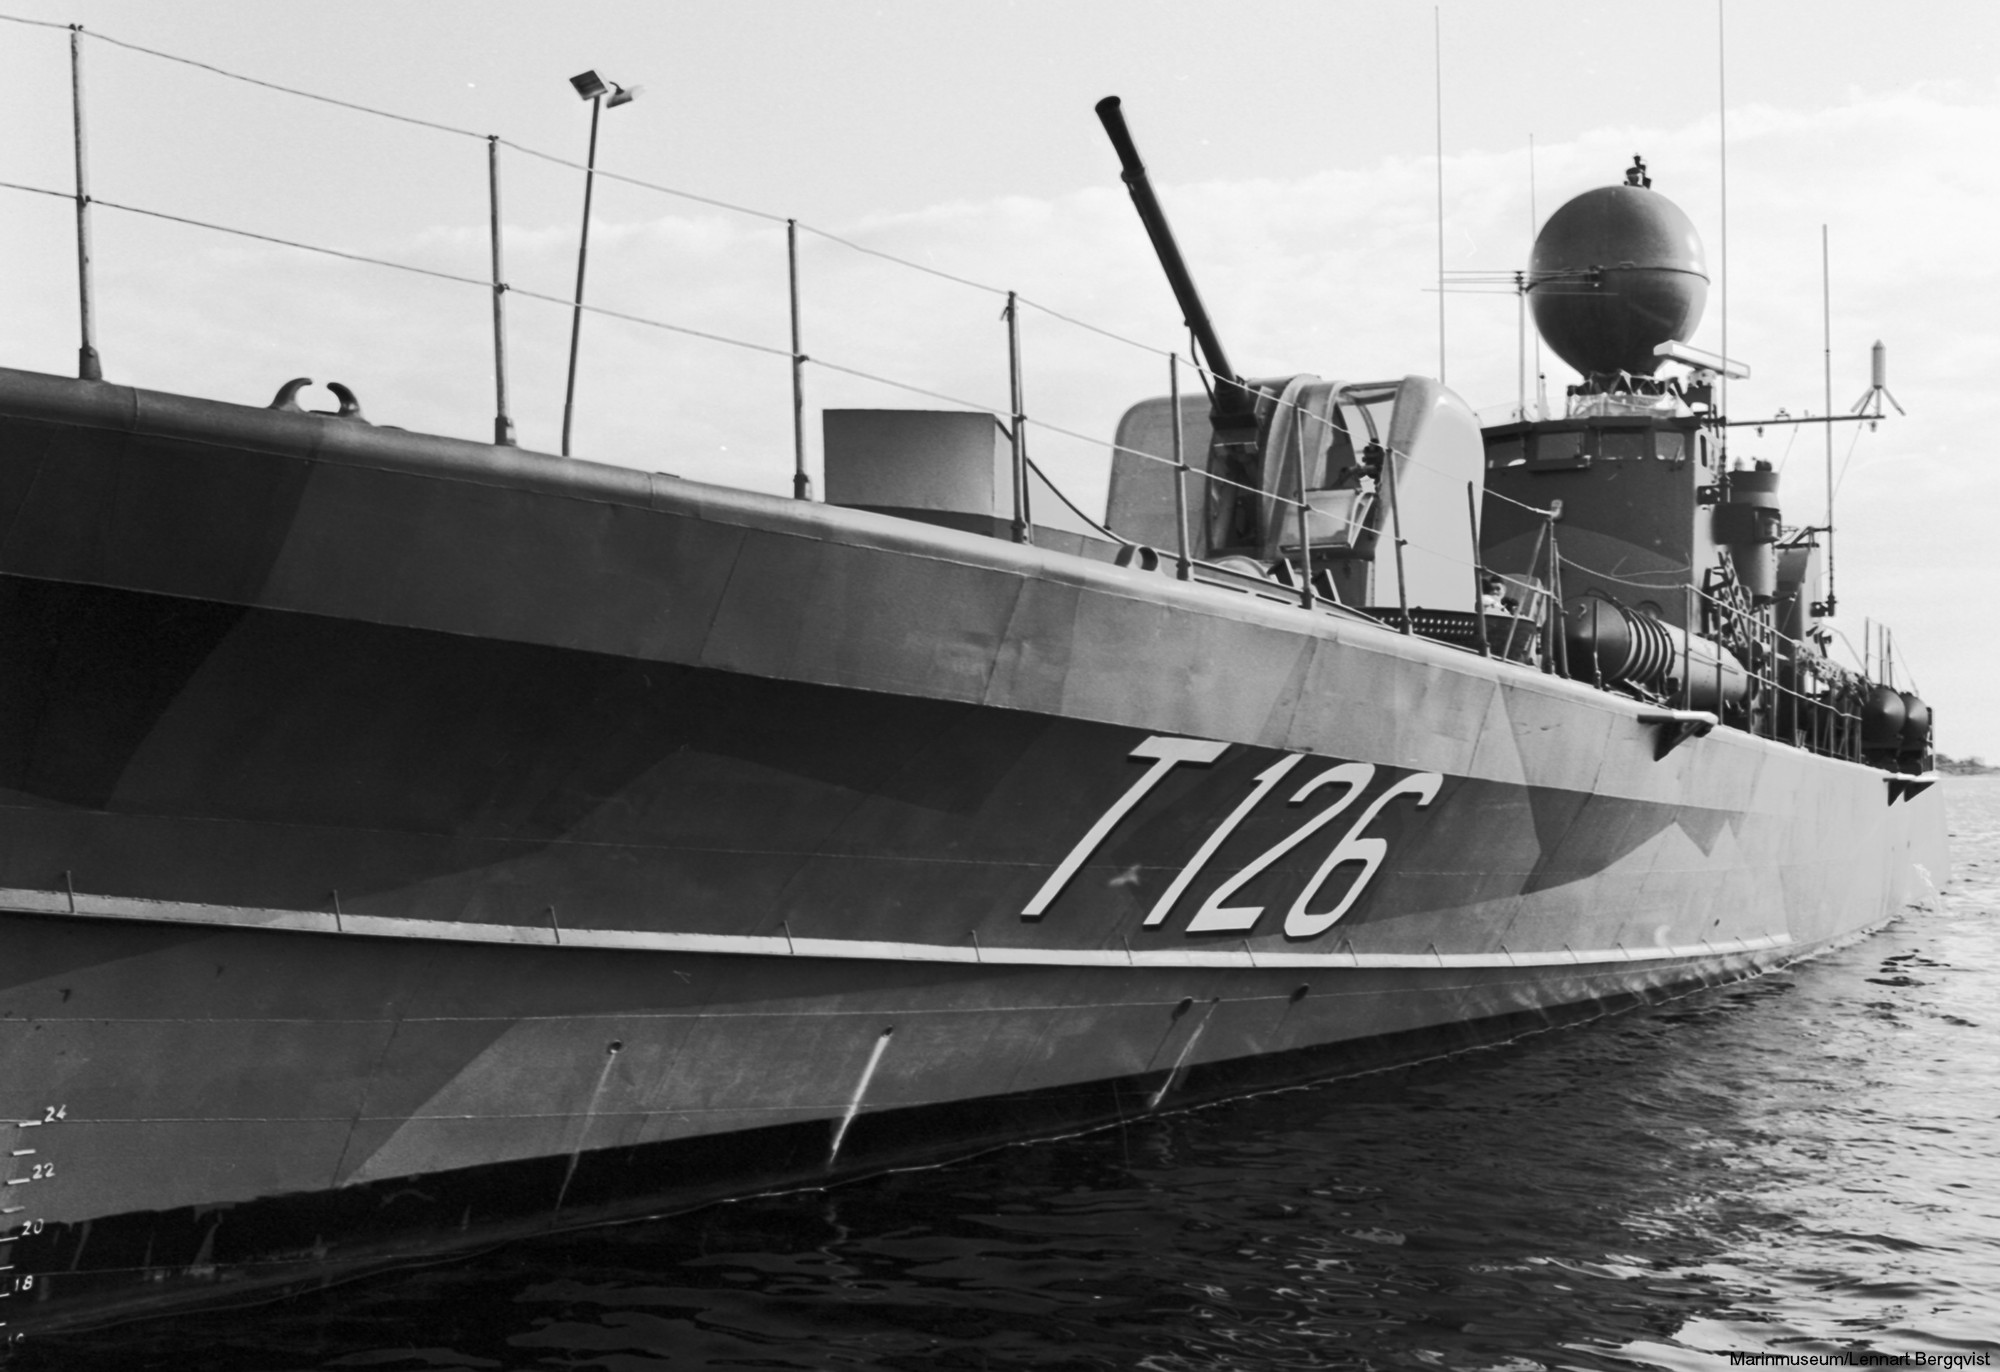 t126 virgo hswms hms spica class fast attack craft torpedo boat vessel swedish navy svenska marinen 02